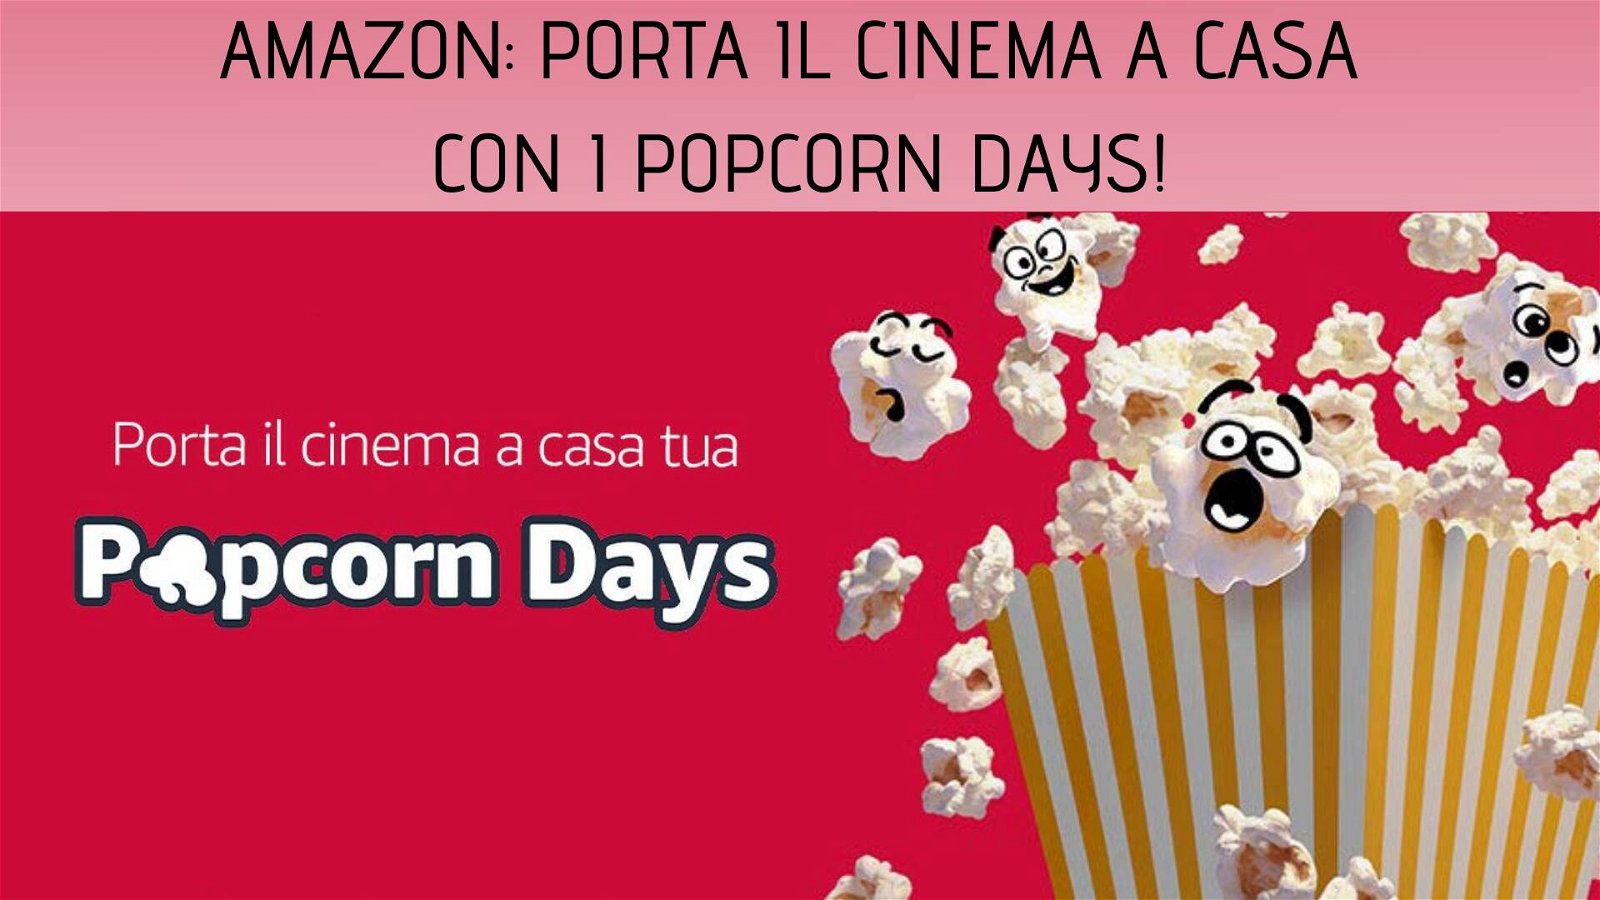 Immagine di Cinema a casa grazie e Popcorn Days di Amazon: sconti su film, smart TV, snack e accessori